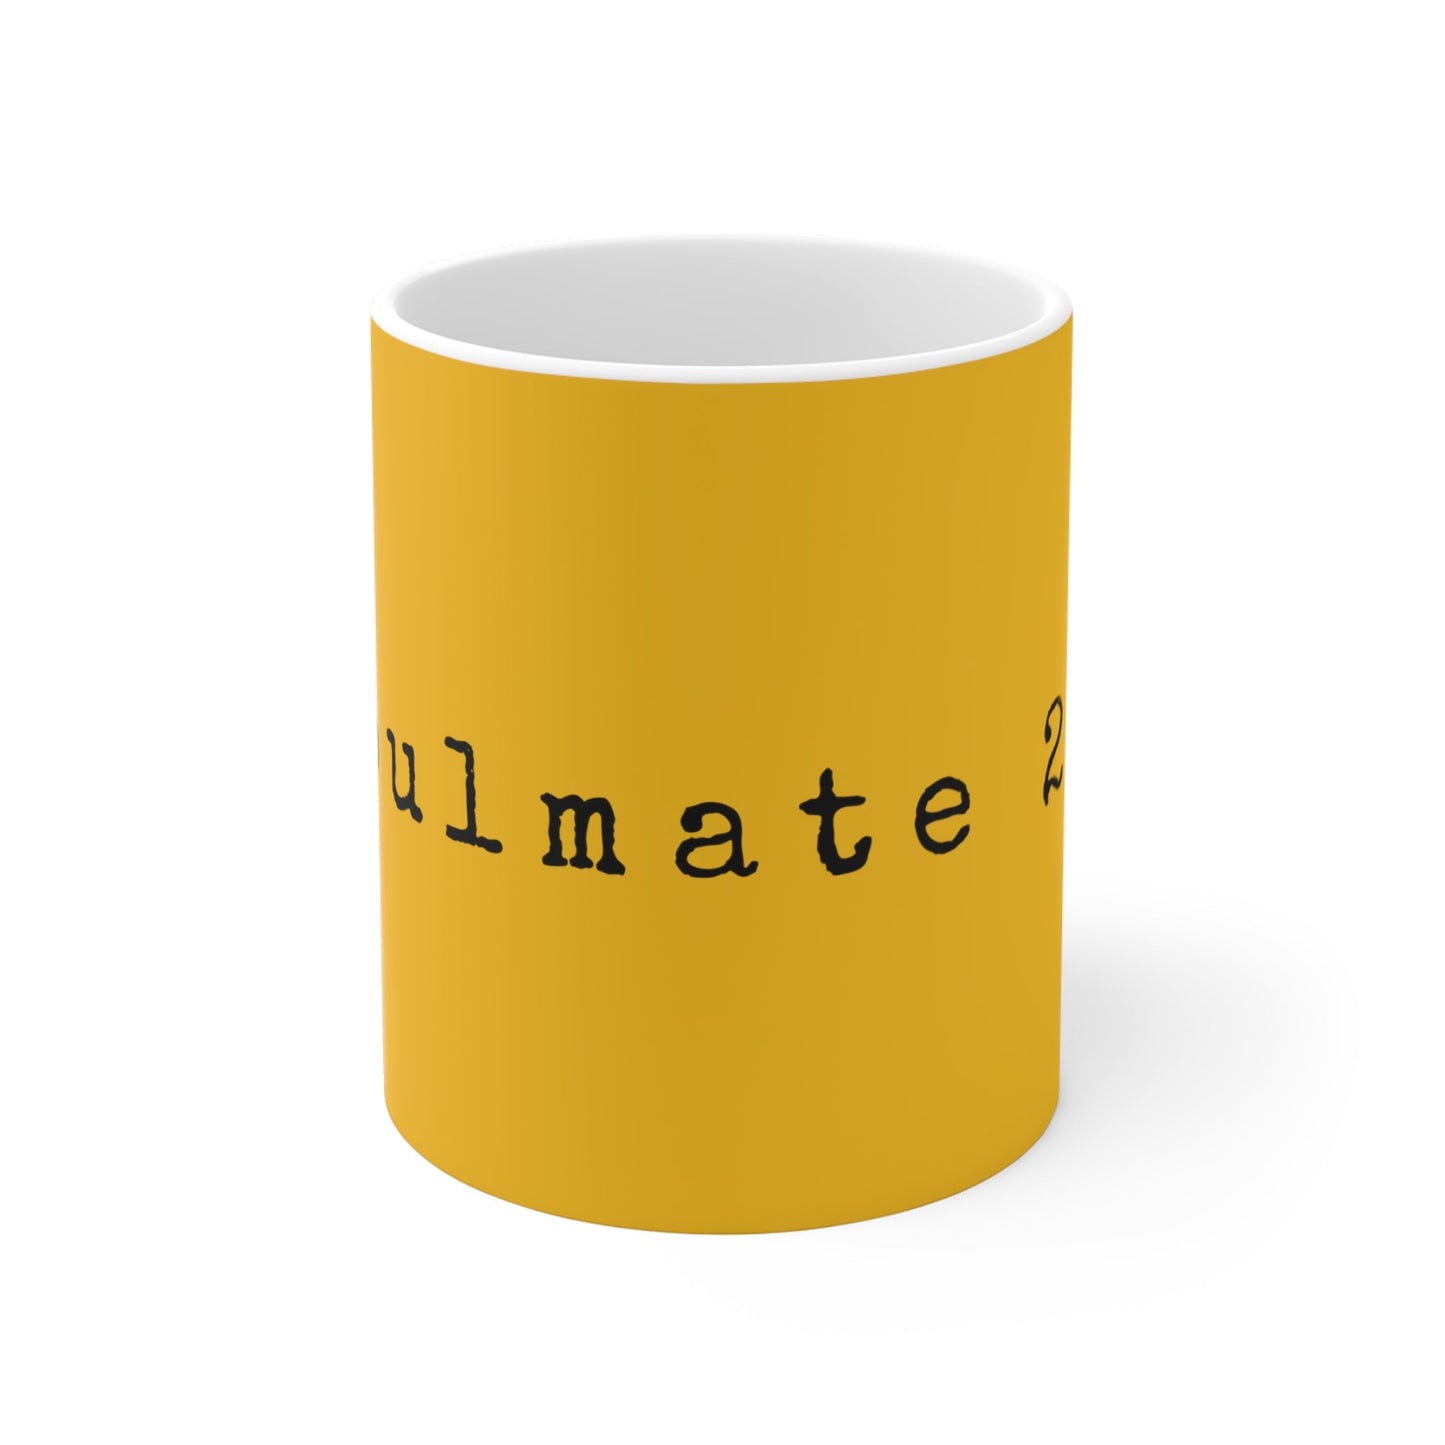 Soulmate 2.0 Magnificent Mug